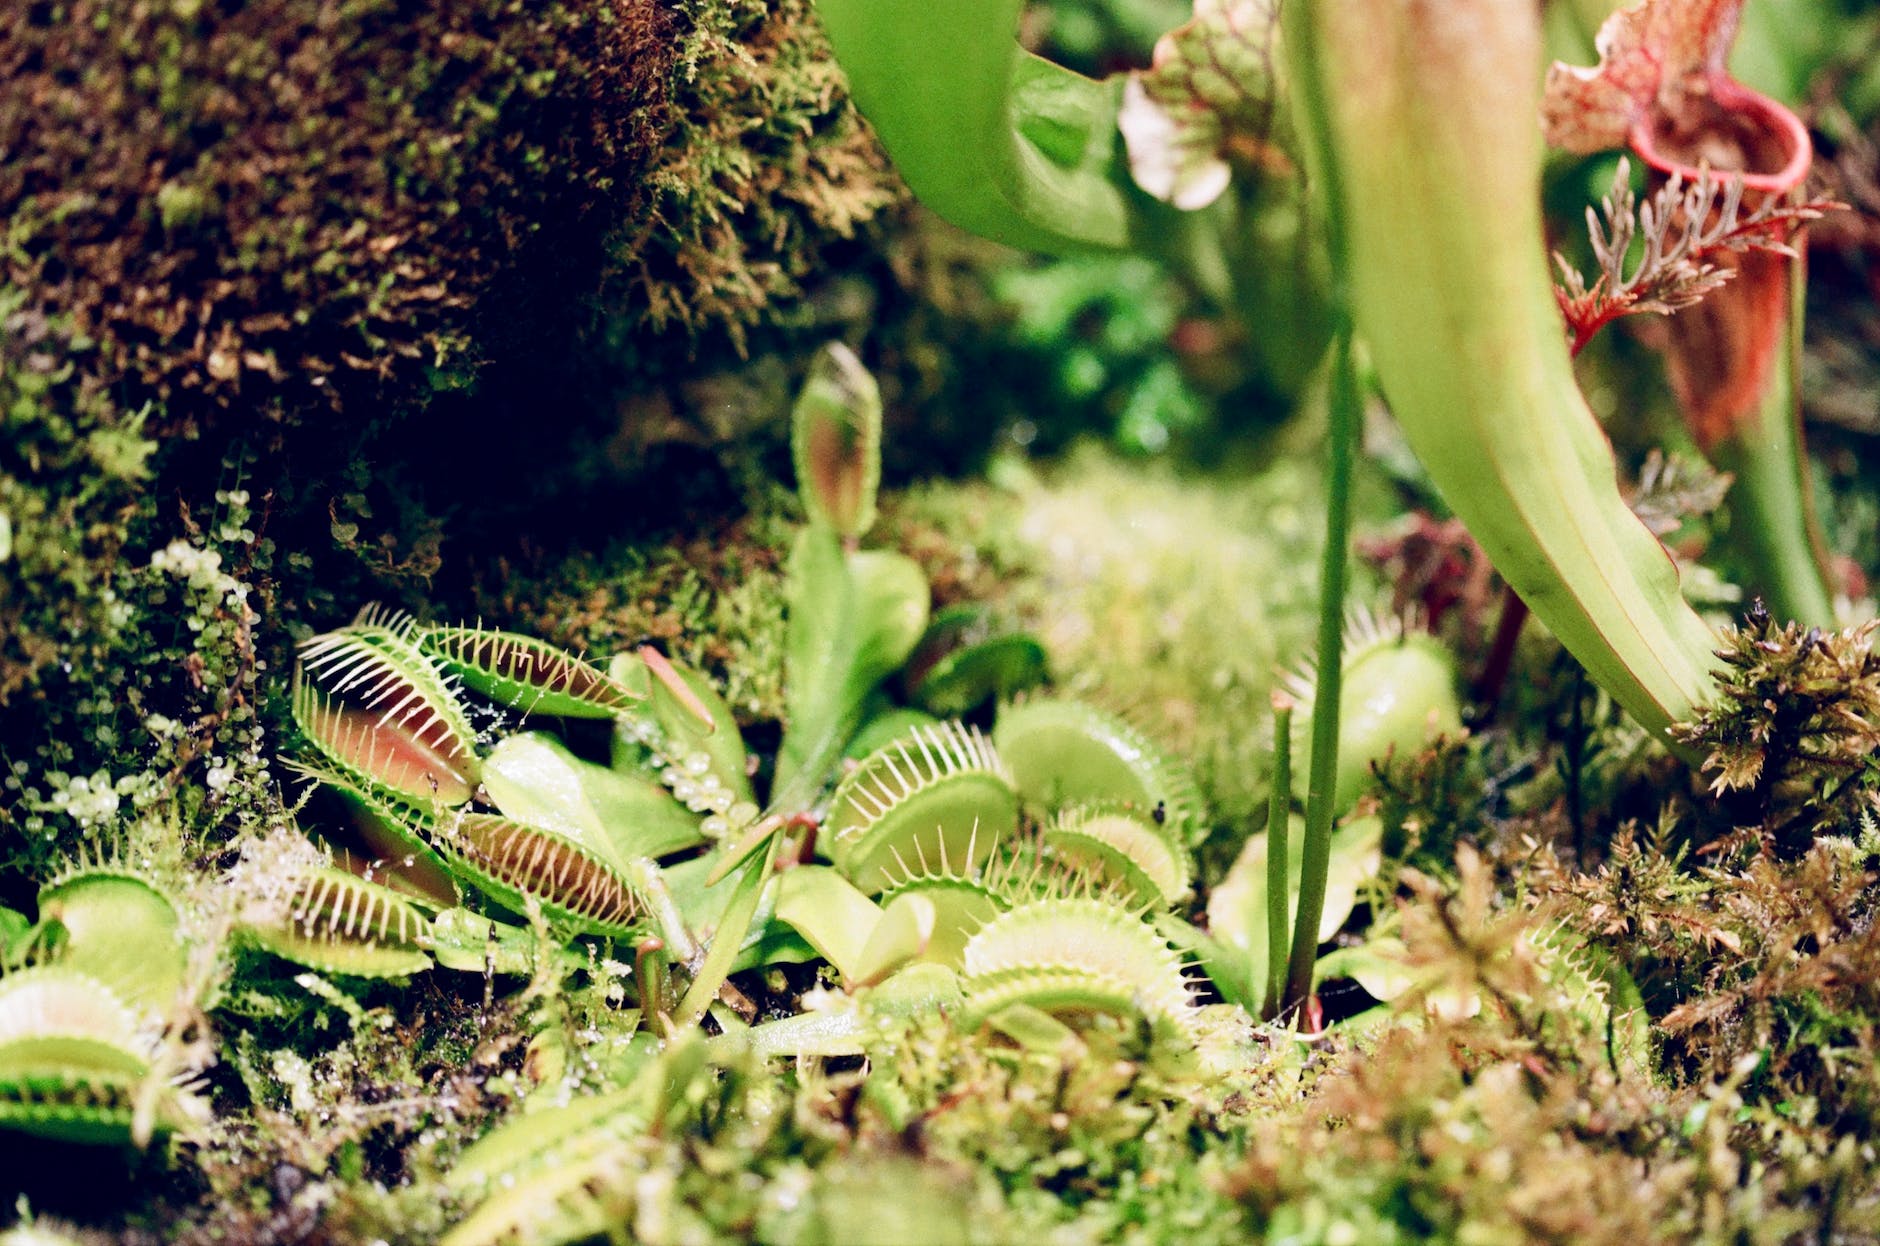 close up of a venus flytrap